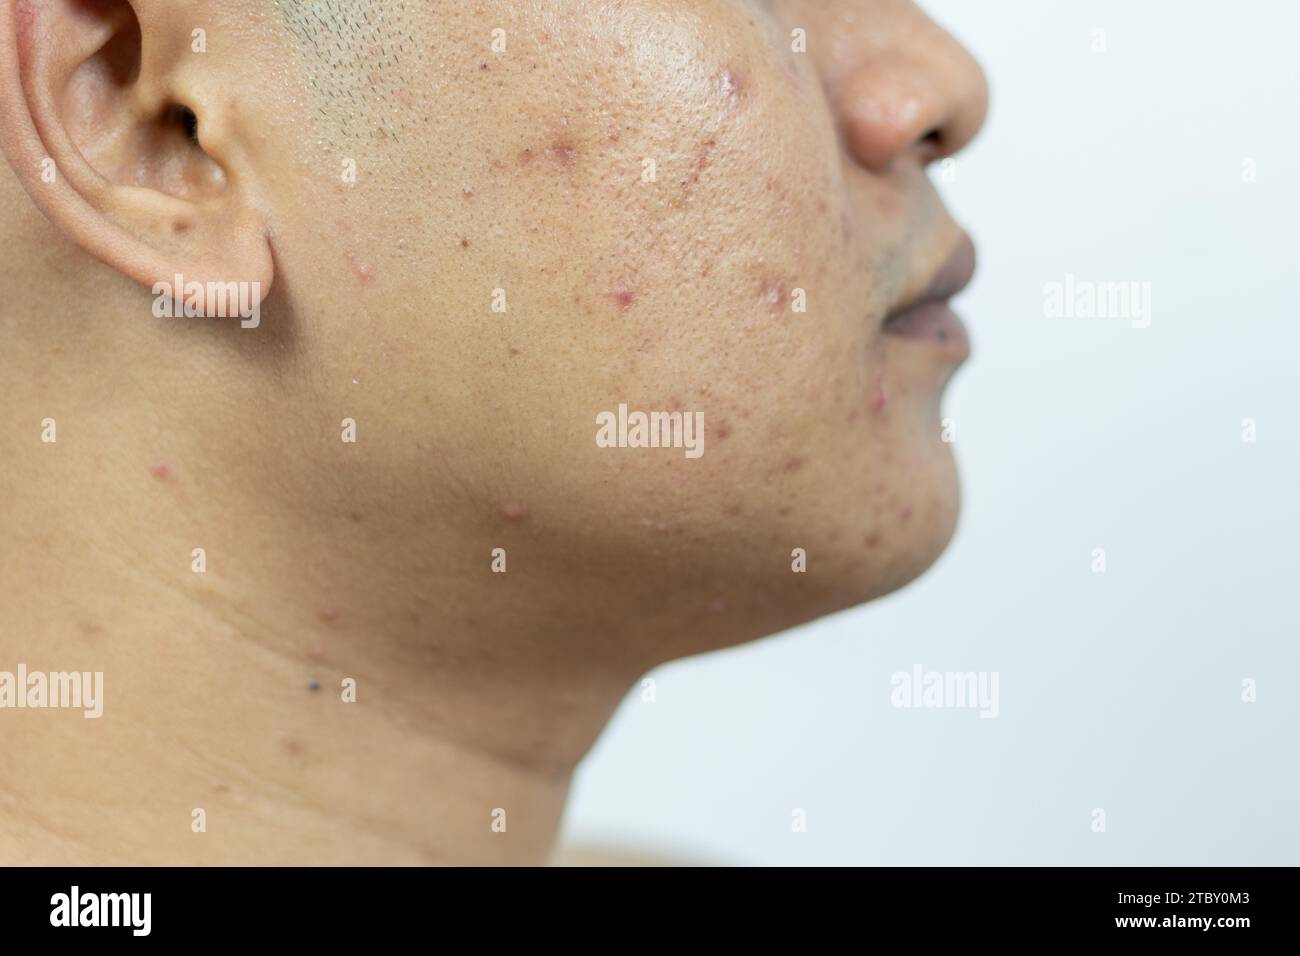 problèmes cutanés. problème de l'acné enflammée sur le visage. Acné enflammée se compose de gonflement, rougeur, et pores qui sont sévèrement obstrués par des bactéries, o Banque D'Images